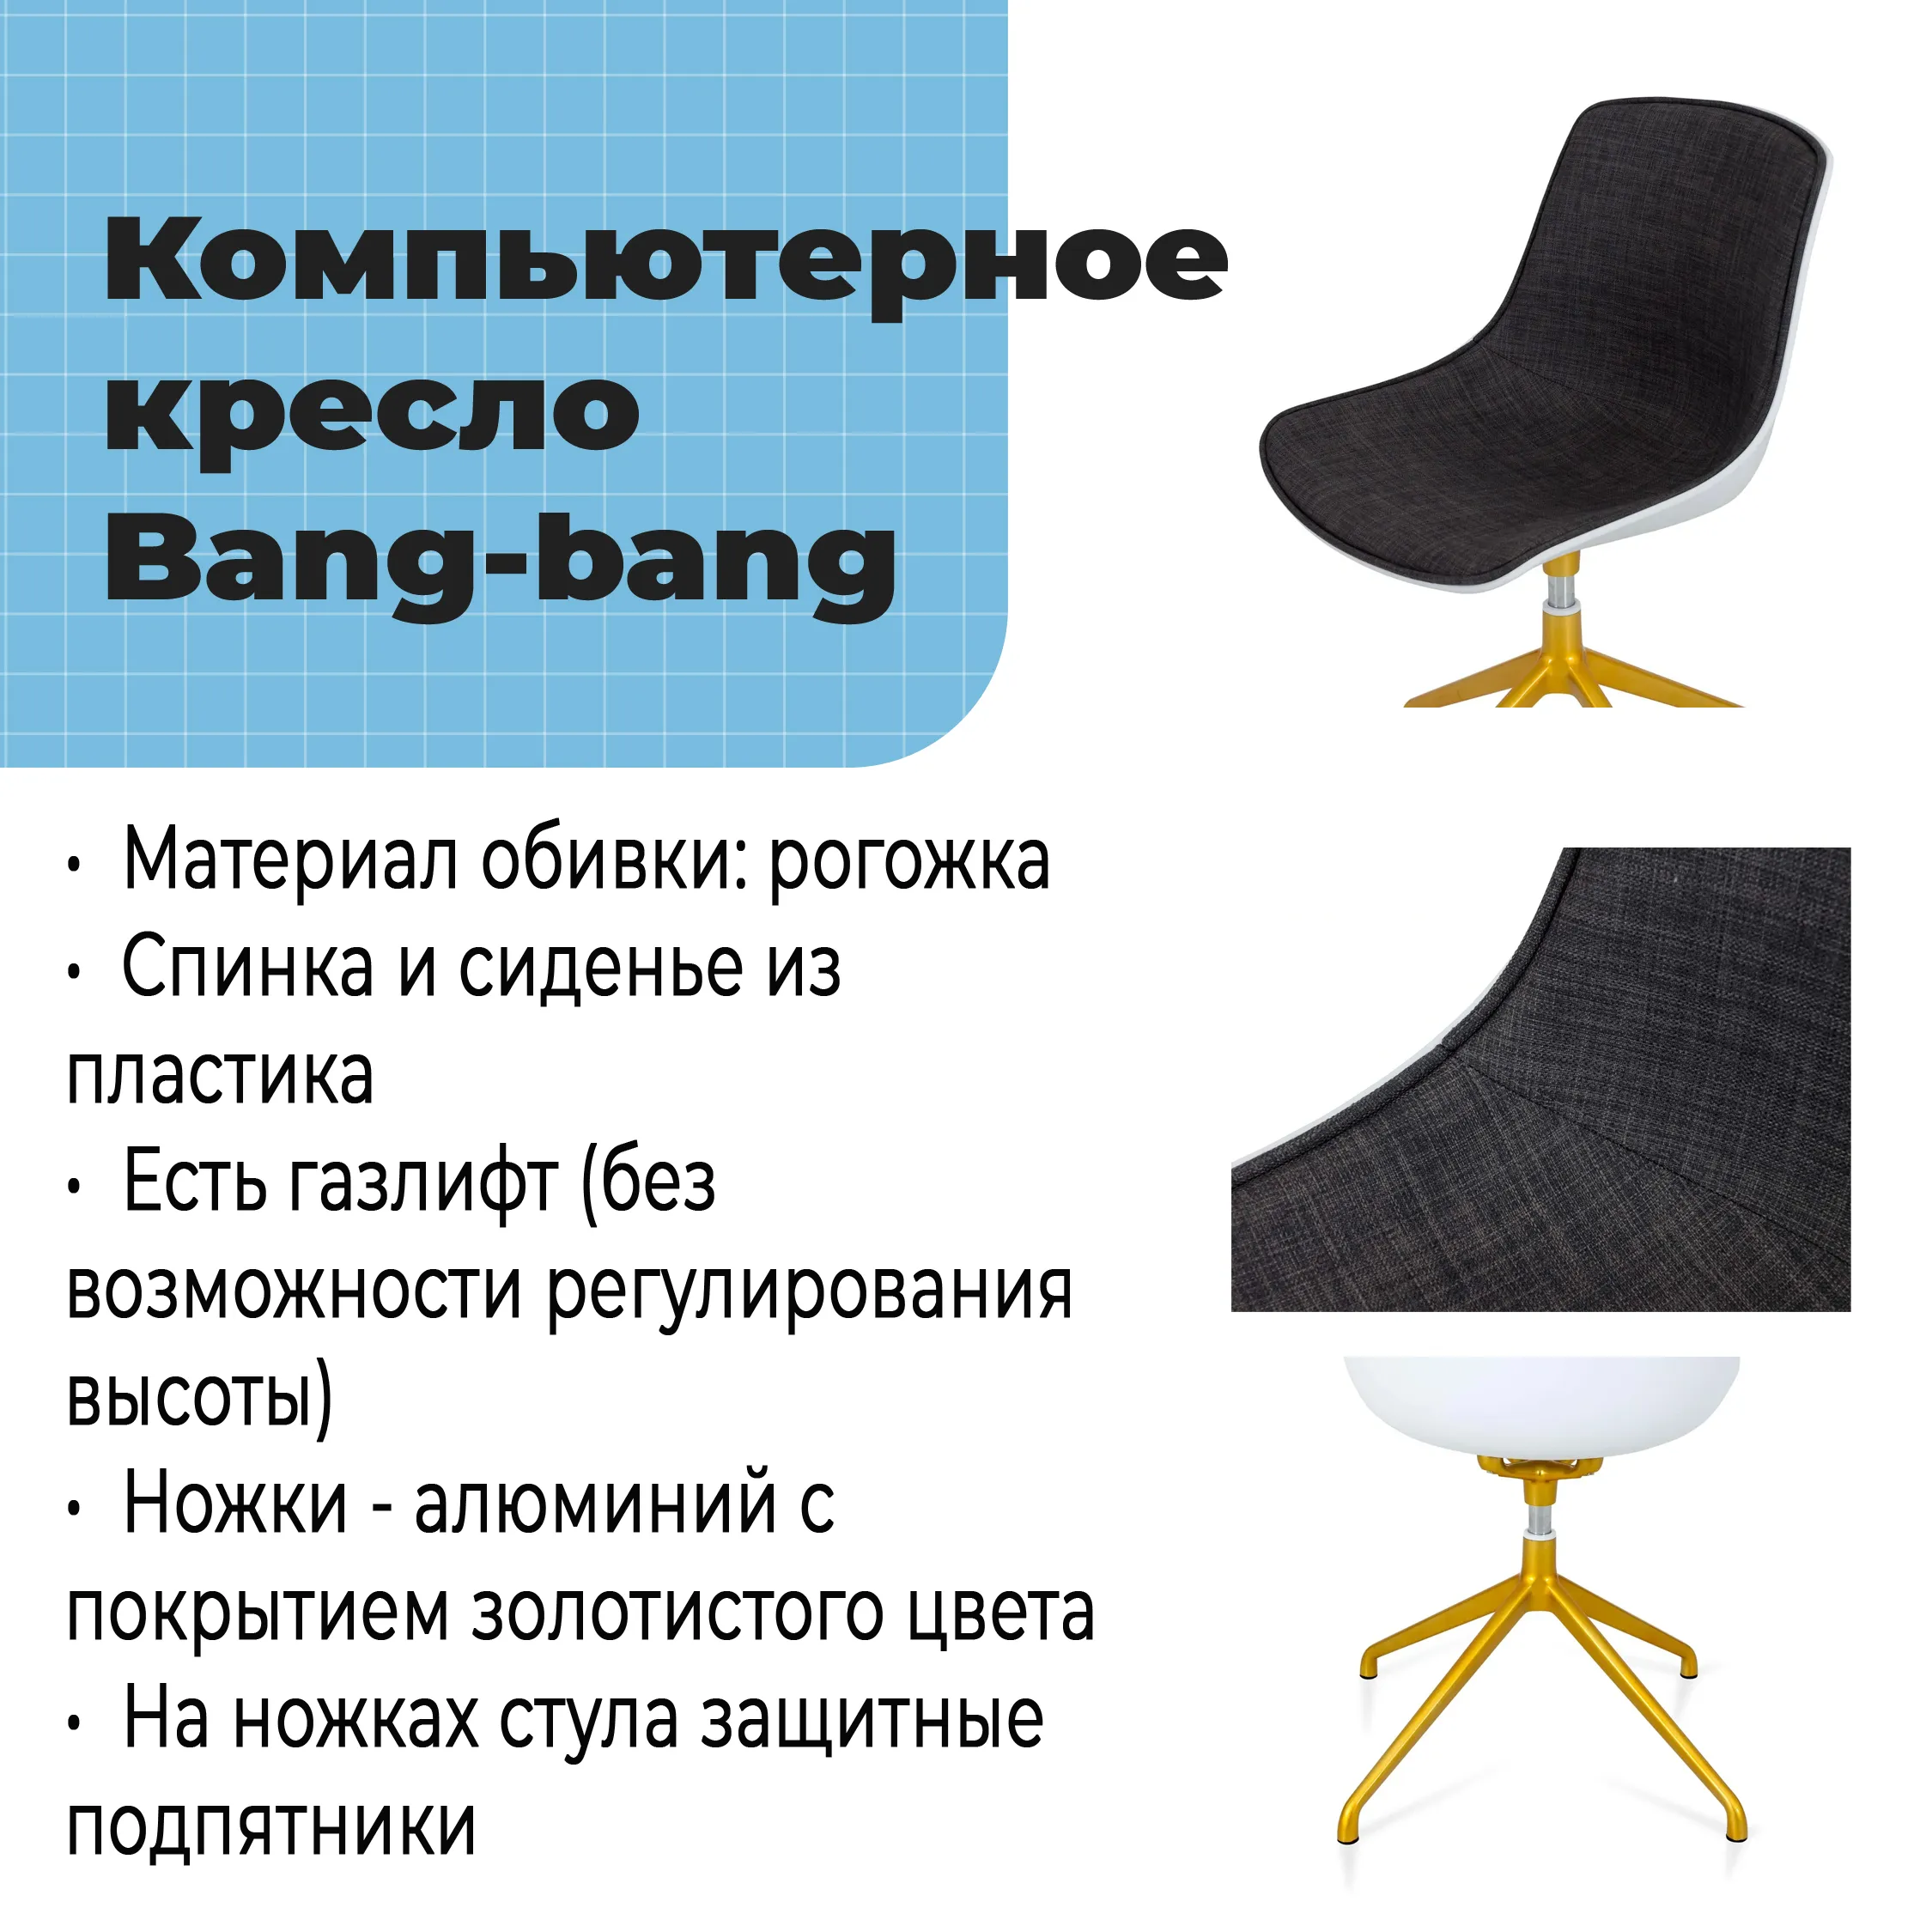 Компьютерное кресло Bang-bang золотистый